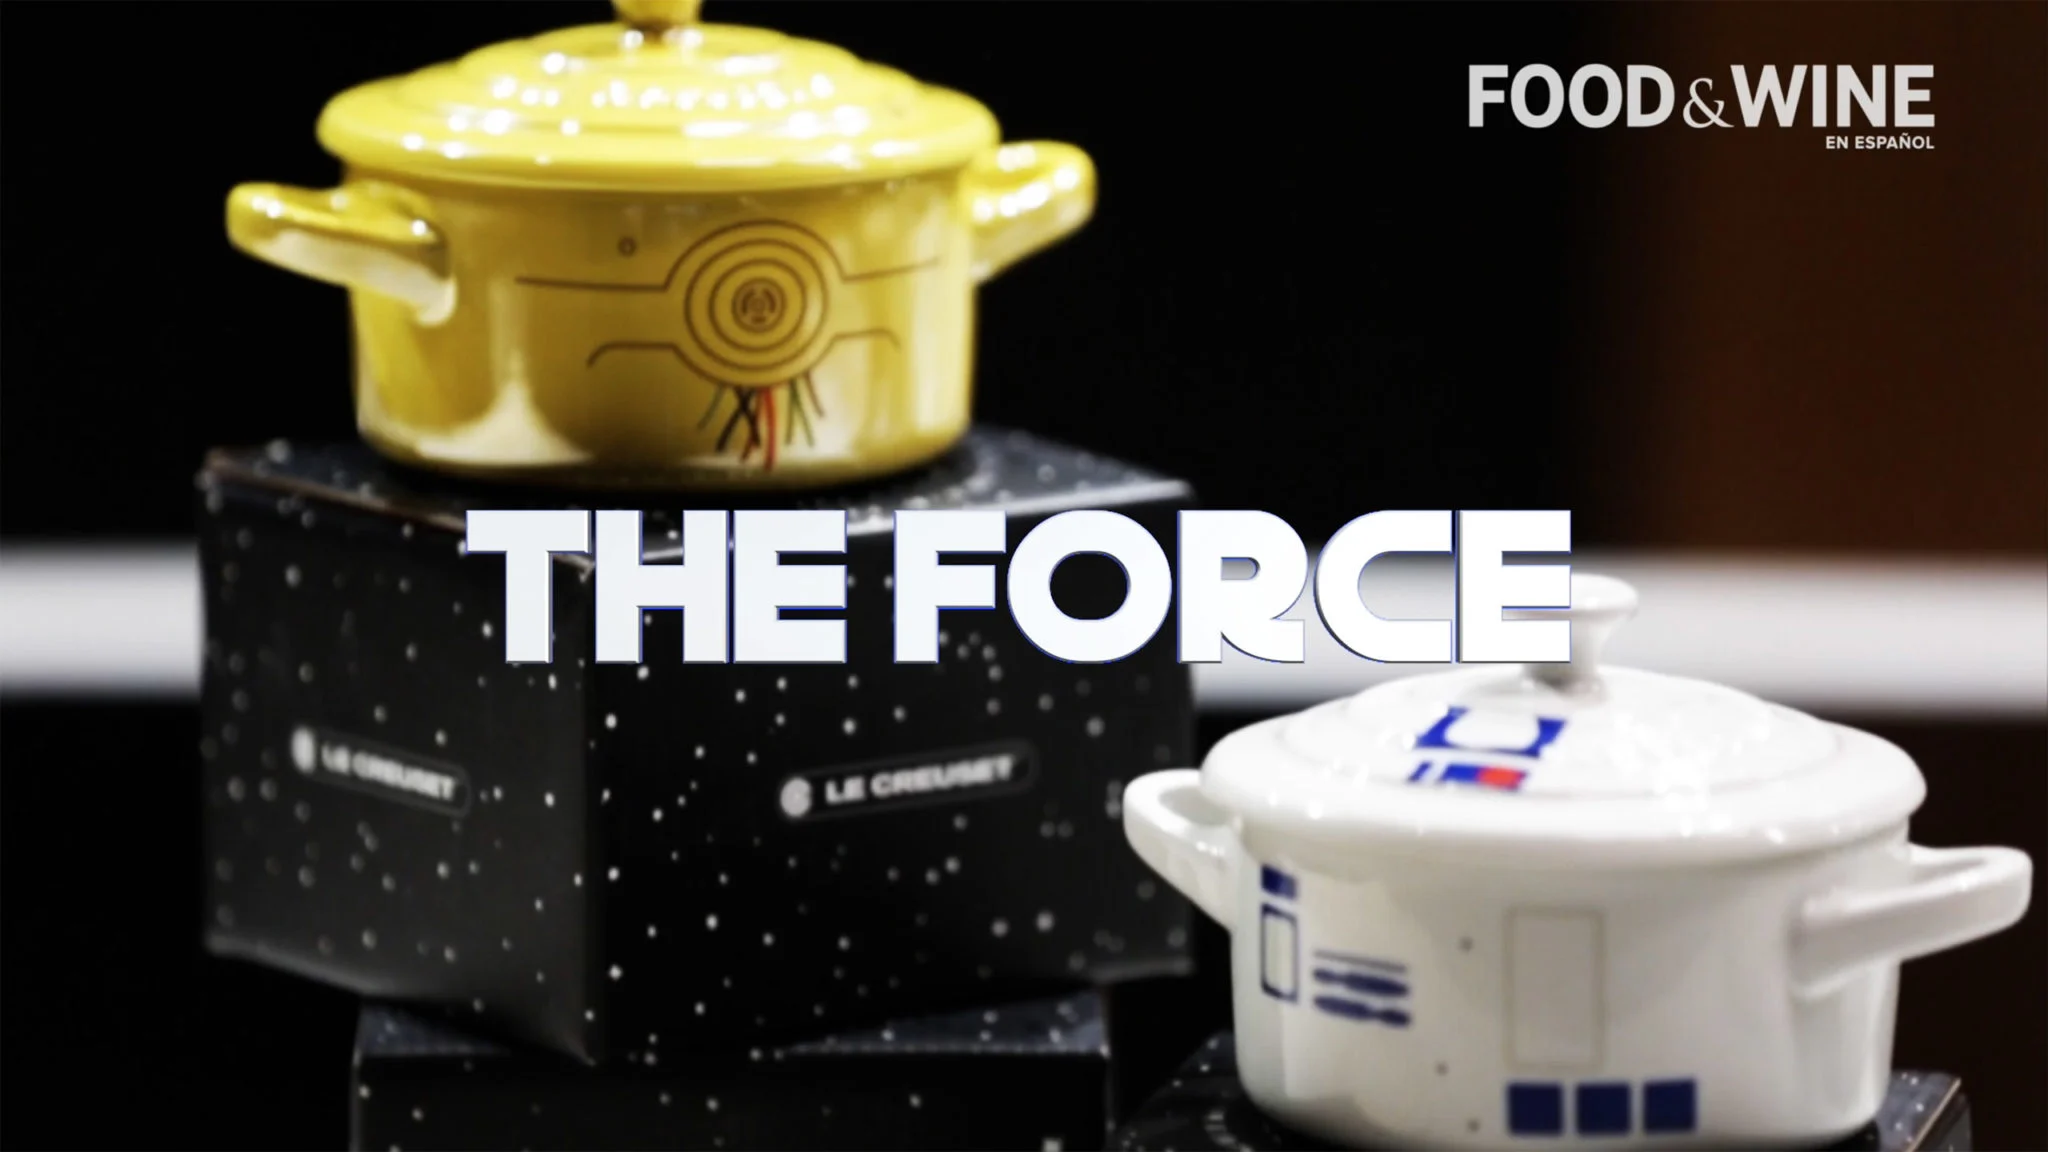 ¿Qué recetas representan el lado oscuro y la fuerza de Star Wars?